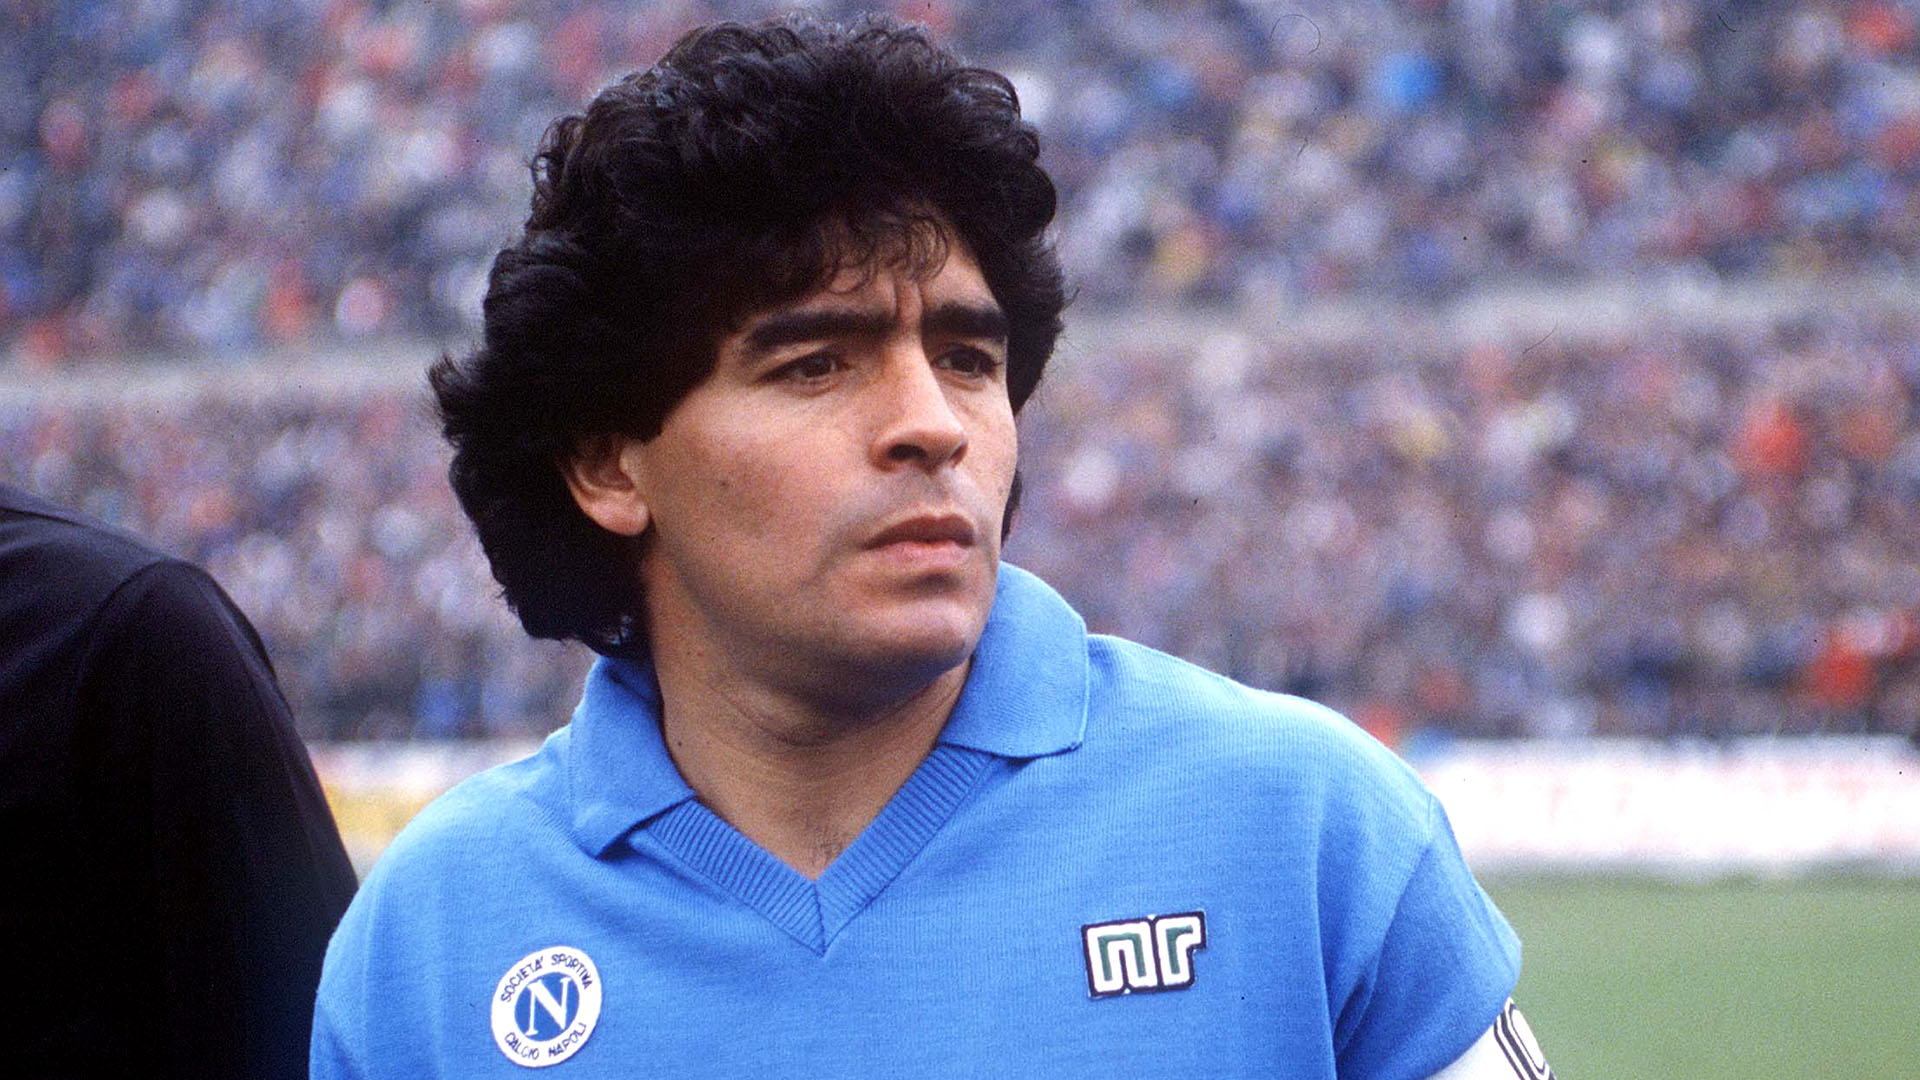 Diego Maradona en el Nápoli (Crédito: Shutterstock)
